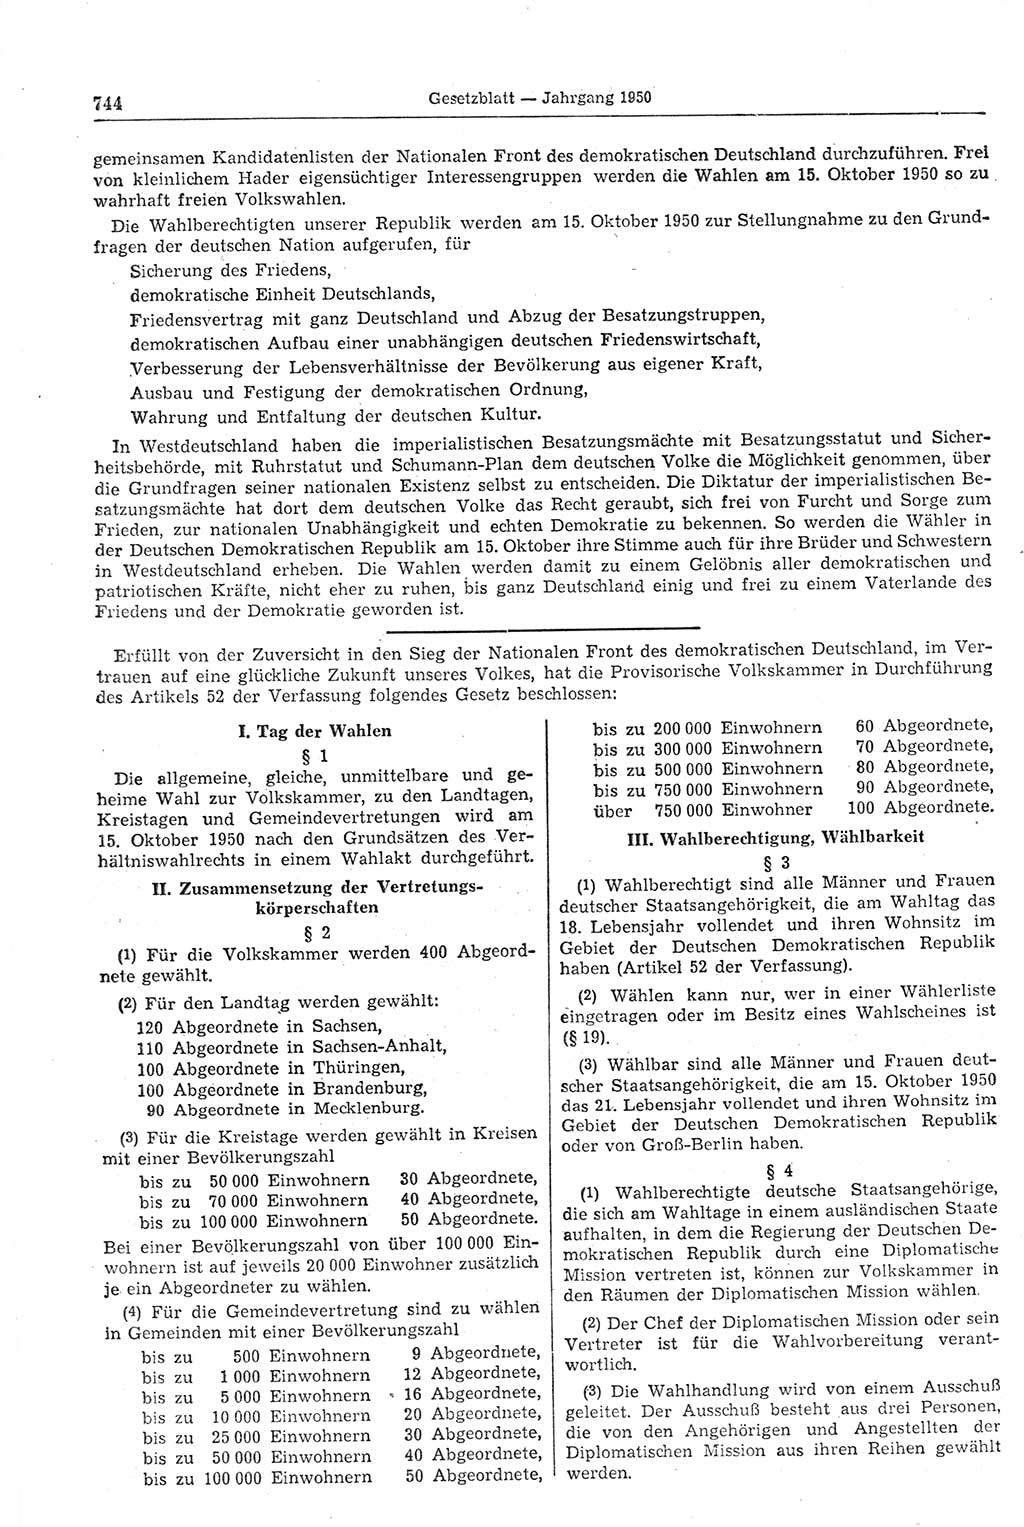 Gesetzblatt (GBl.) der Deutschen Demokratischen Republik (DDR) 1950, Seite 744 (GBl. DDR 1950, S. 744)